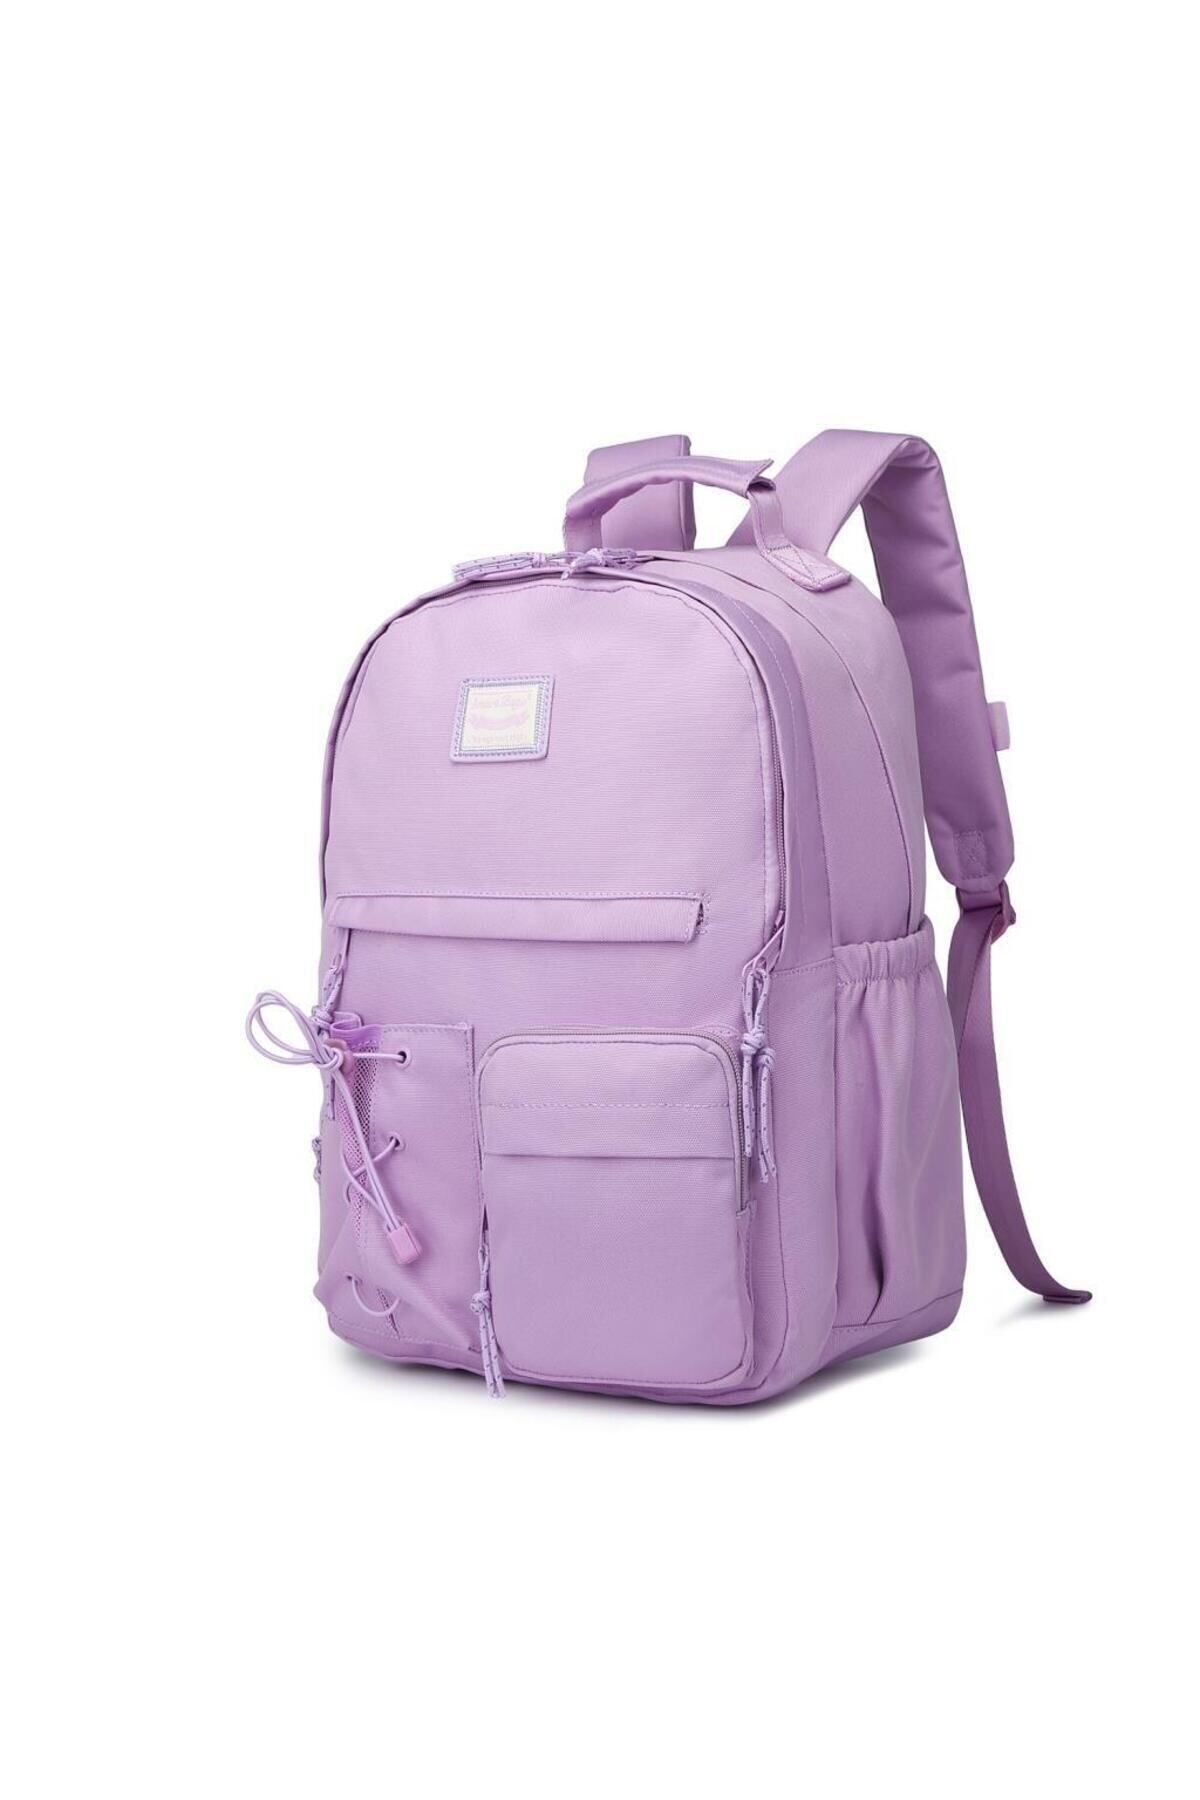 Smart Bags Sırt Çantası Okul Boyu Laptop Gözlü 3205